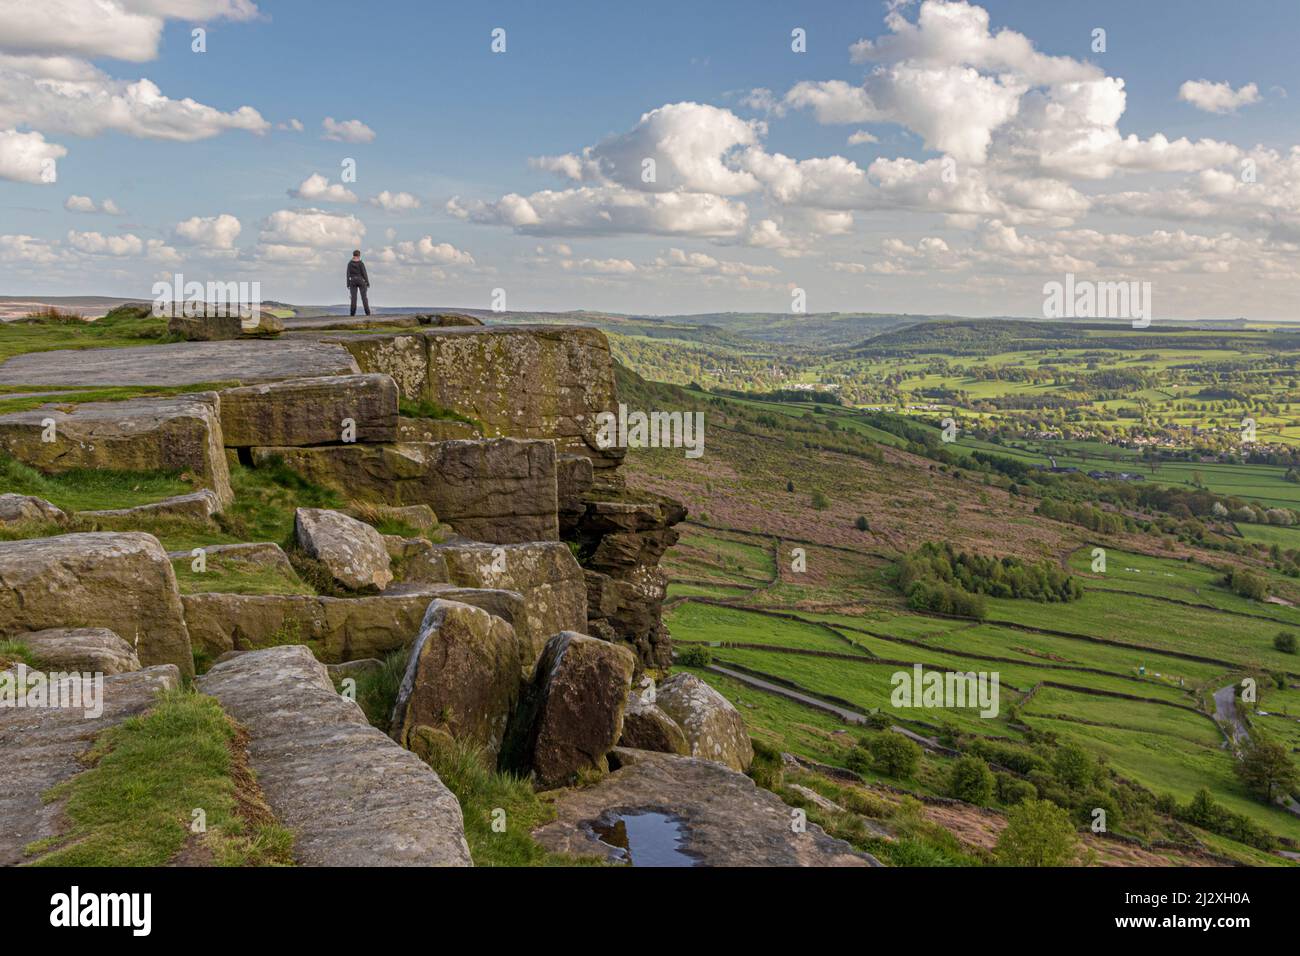 Persona in piedi sul bordo della scogliera che guarda verso la valle a Curbar Edge, Peak District, Inghilterra, Regno Unito Foto Stock